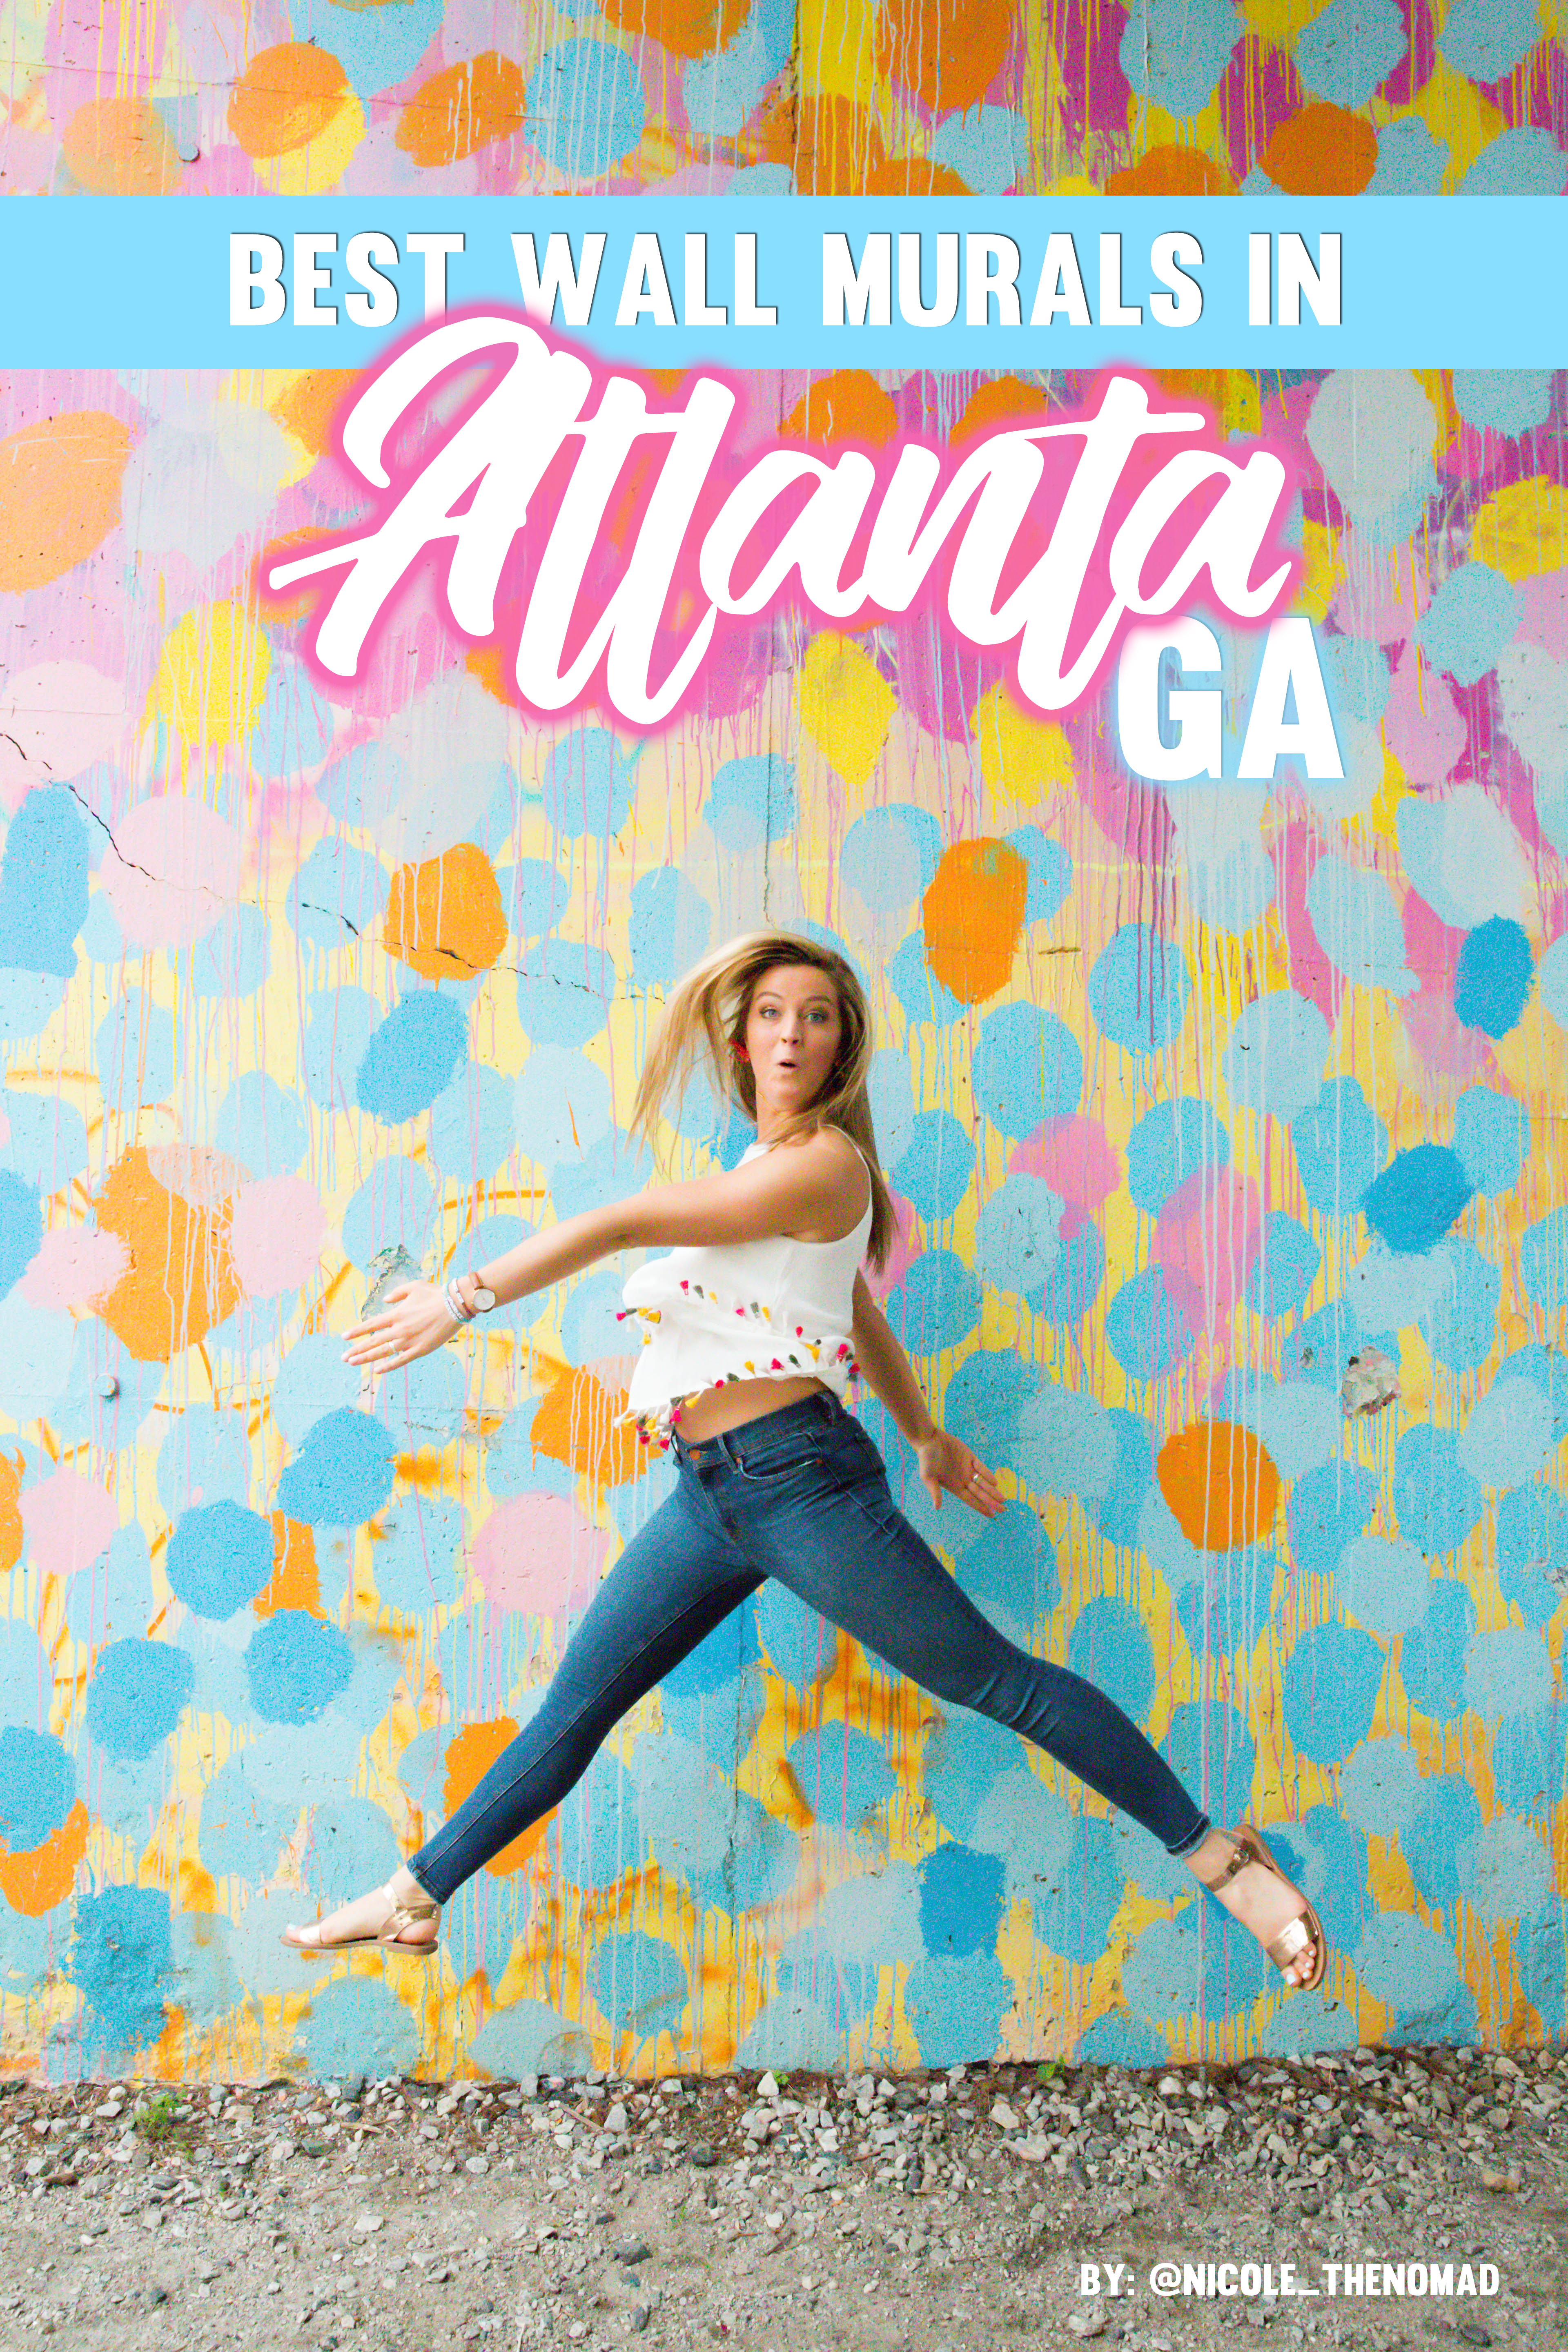 Atlanta Wall Crawl – The Best Wall Murals in Atlanta, Georgia